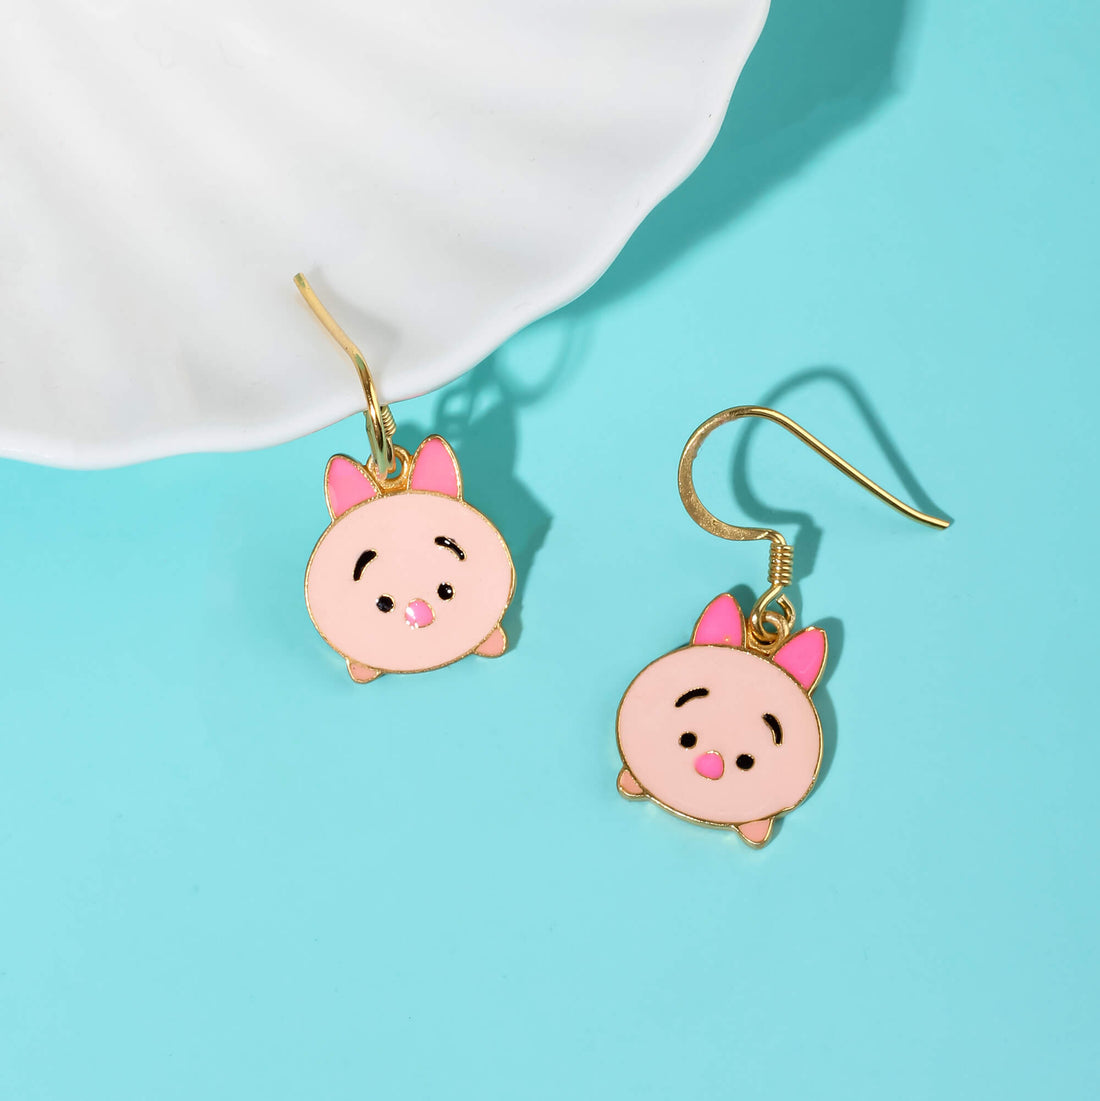 Piglet earrings